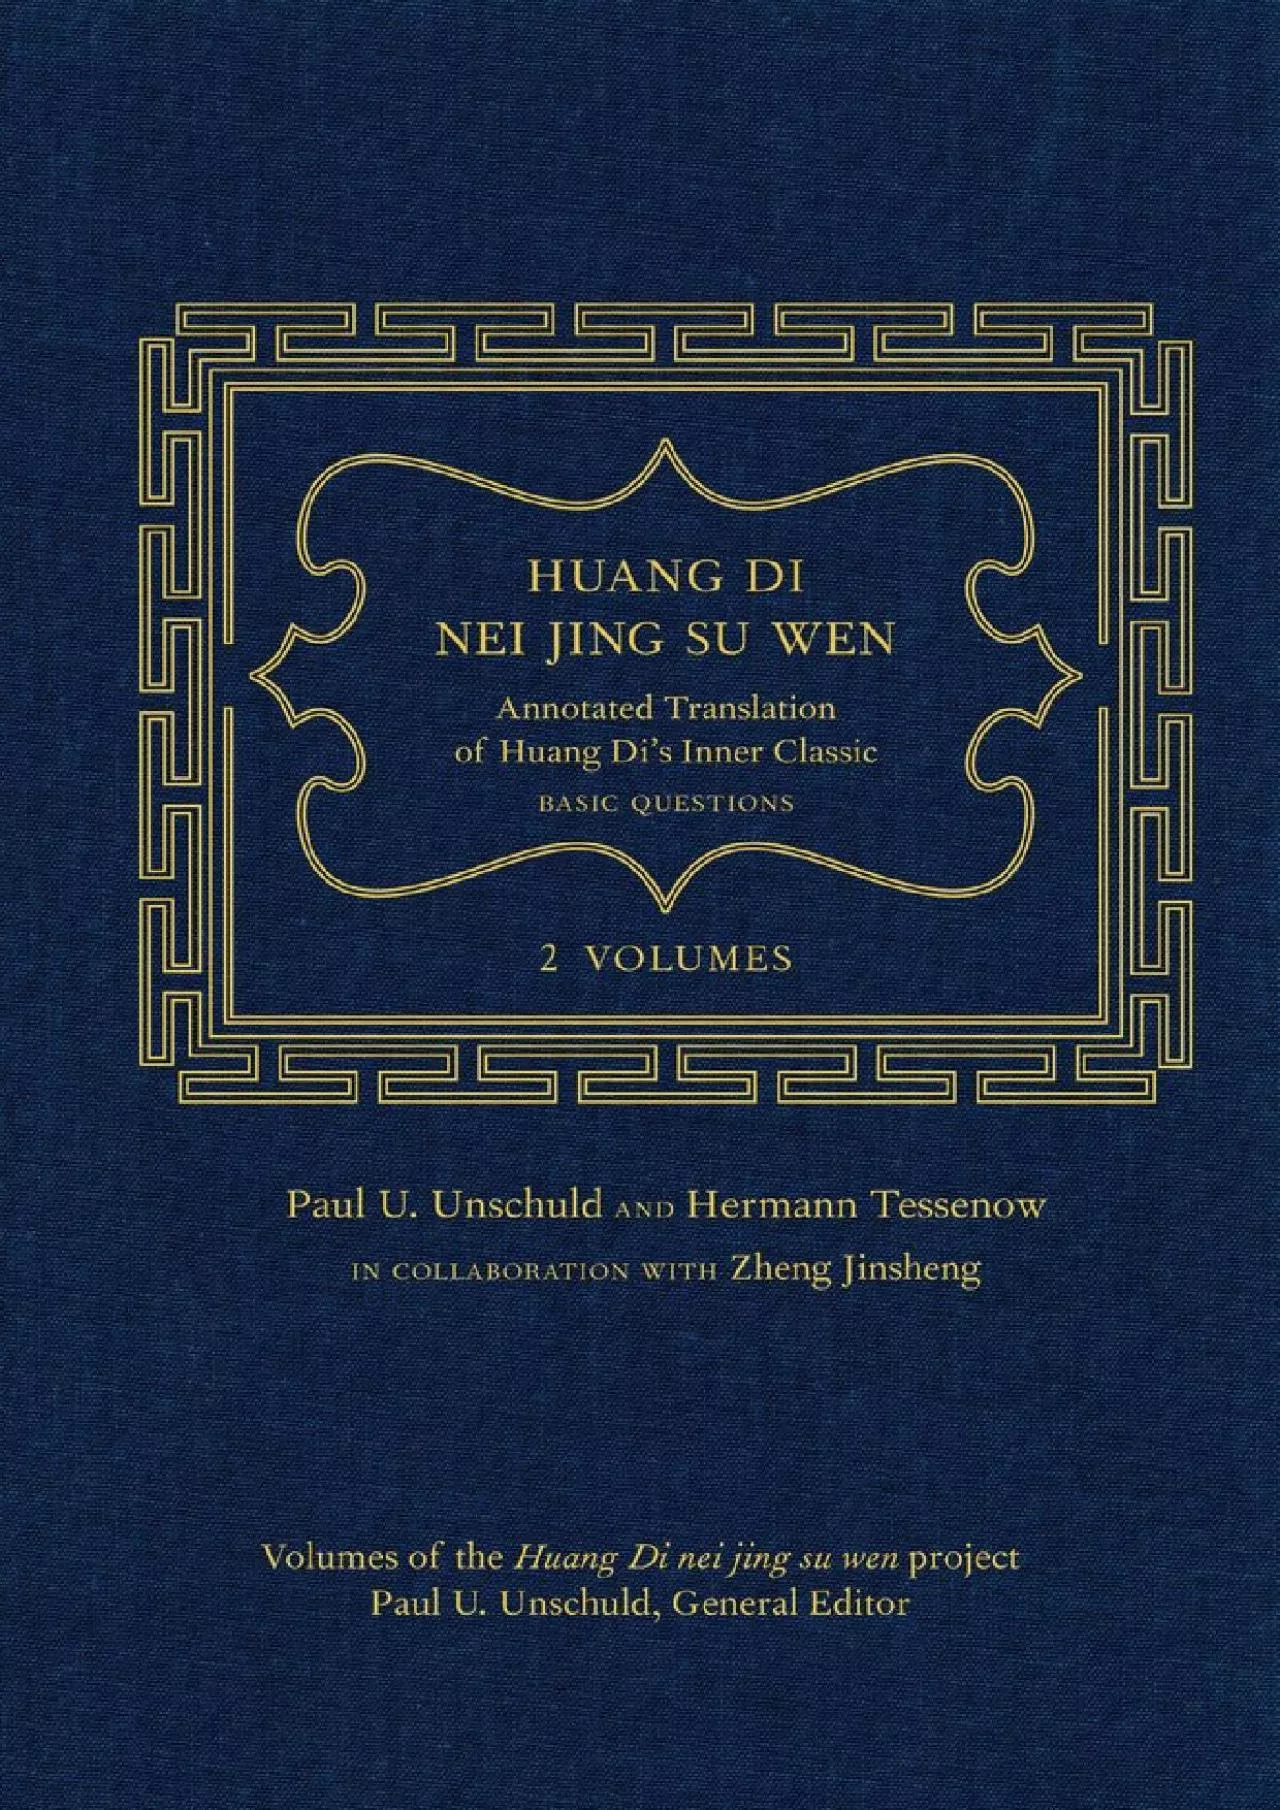 (BOOK)-Huang Di Nei Jing Su Wen: An Annotated Translation of Huang Di’s Inner Classic